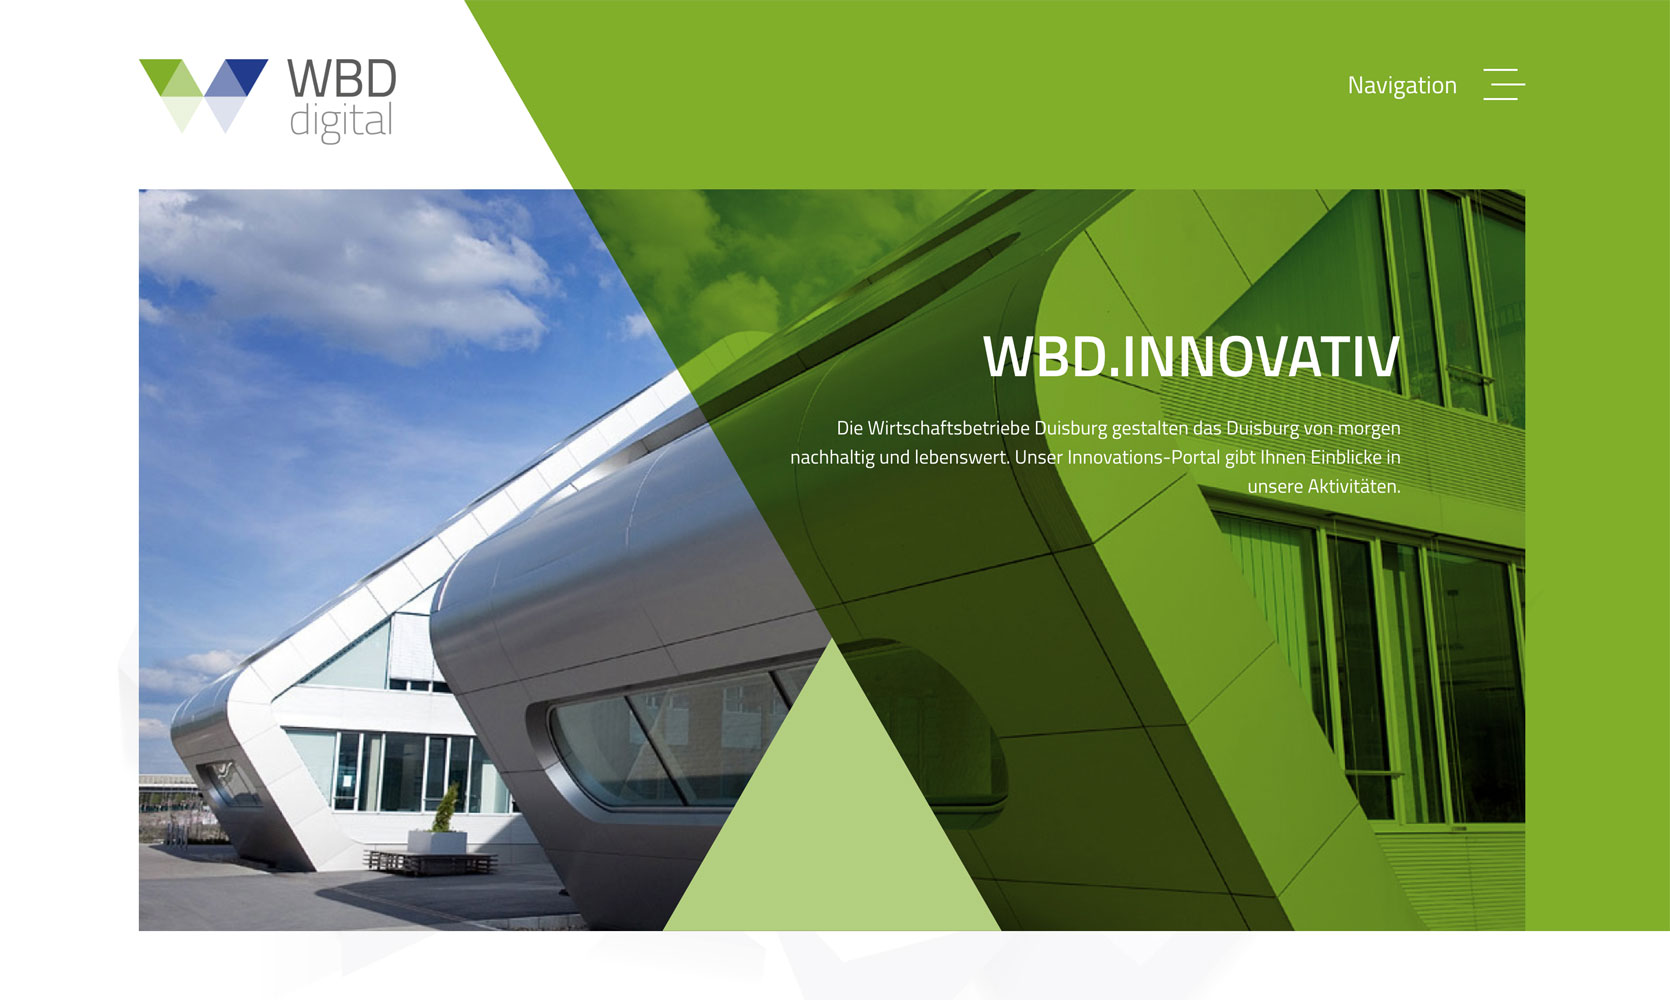 WBD innovativ